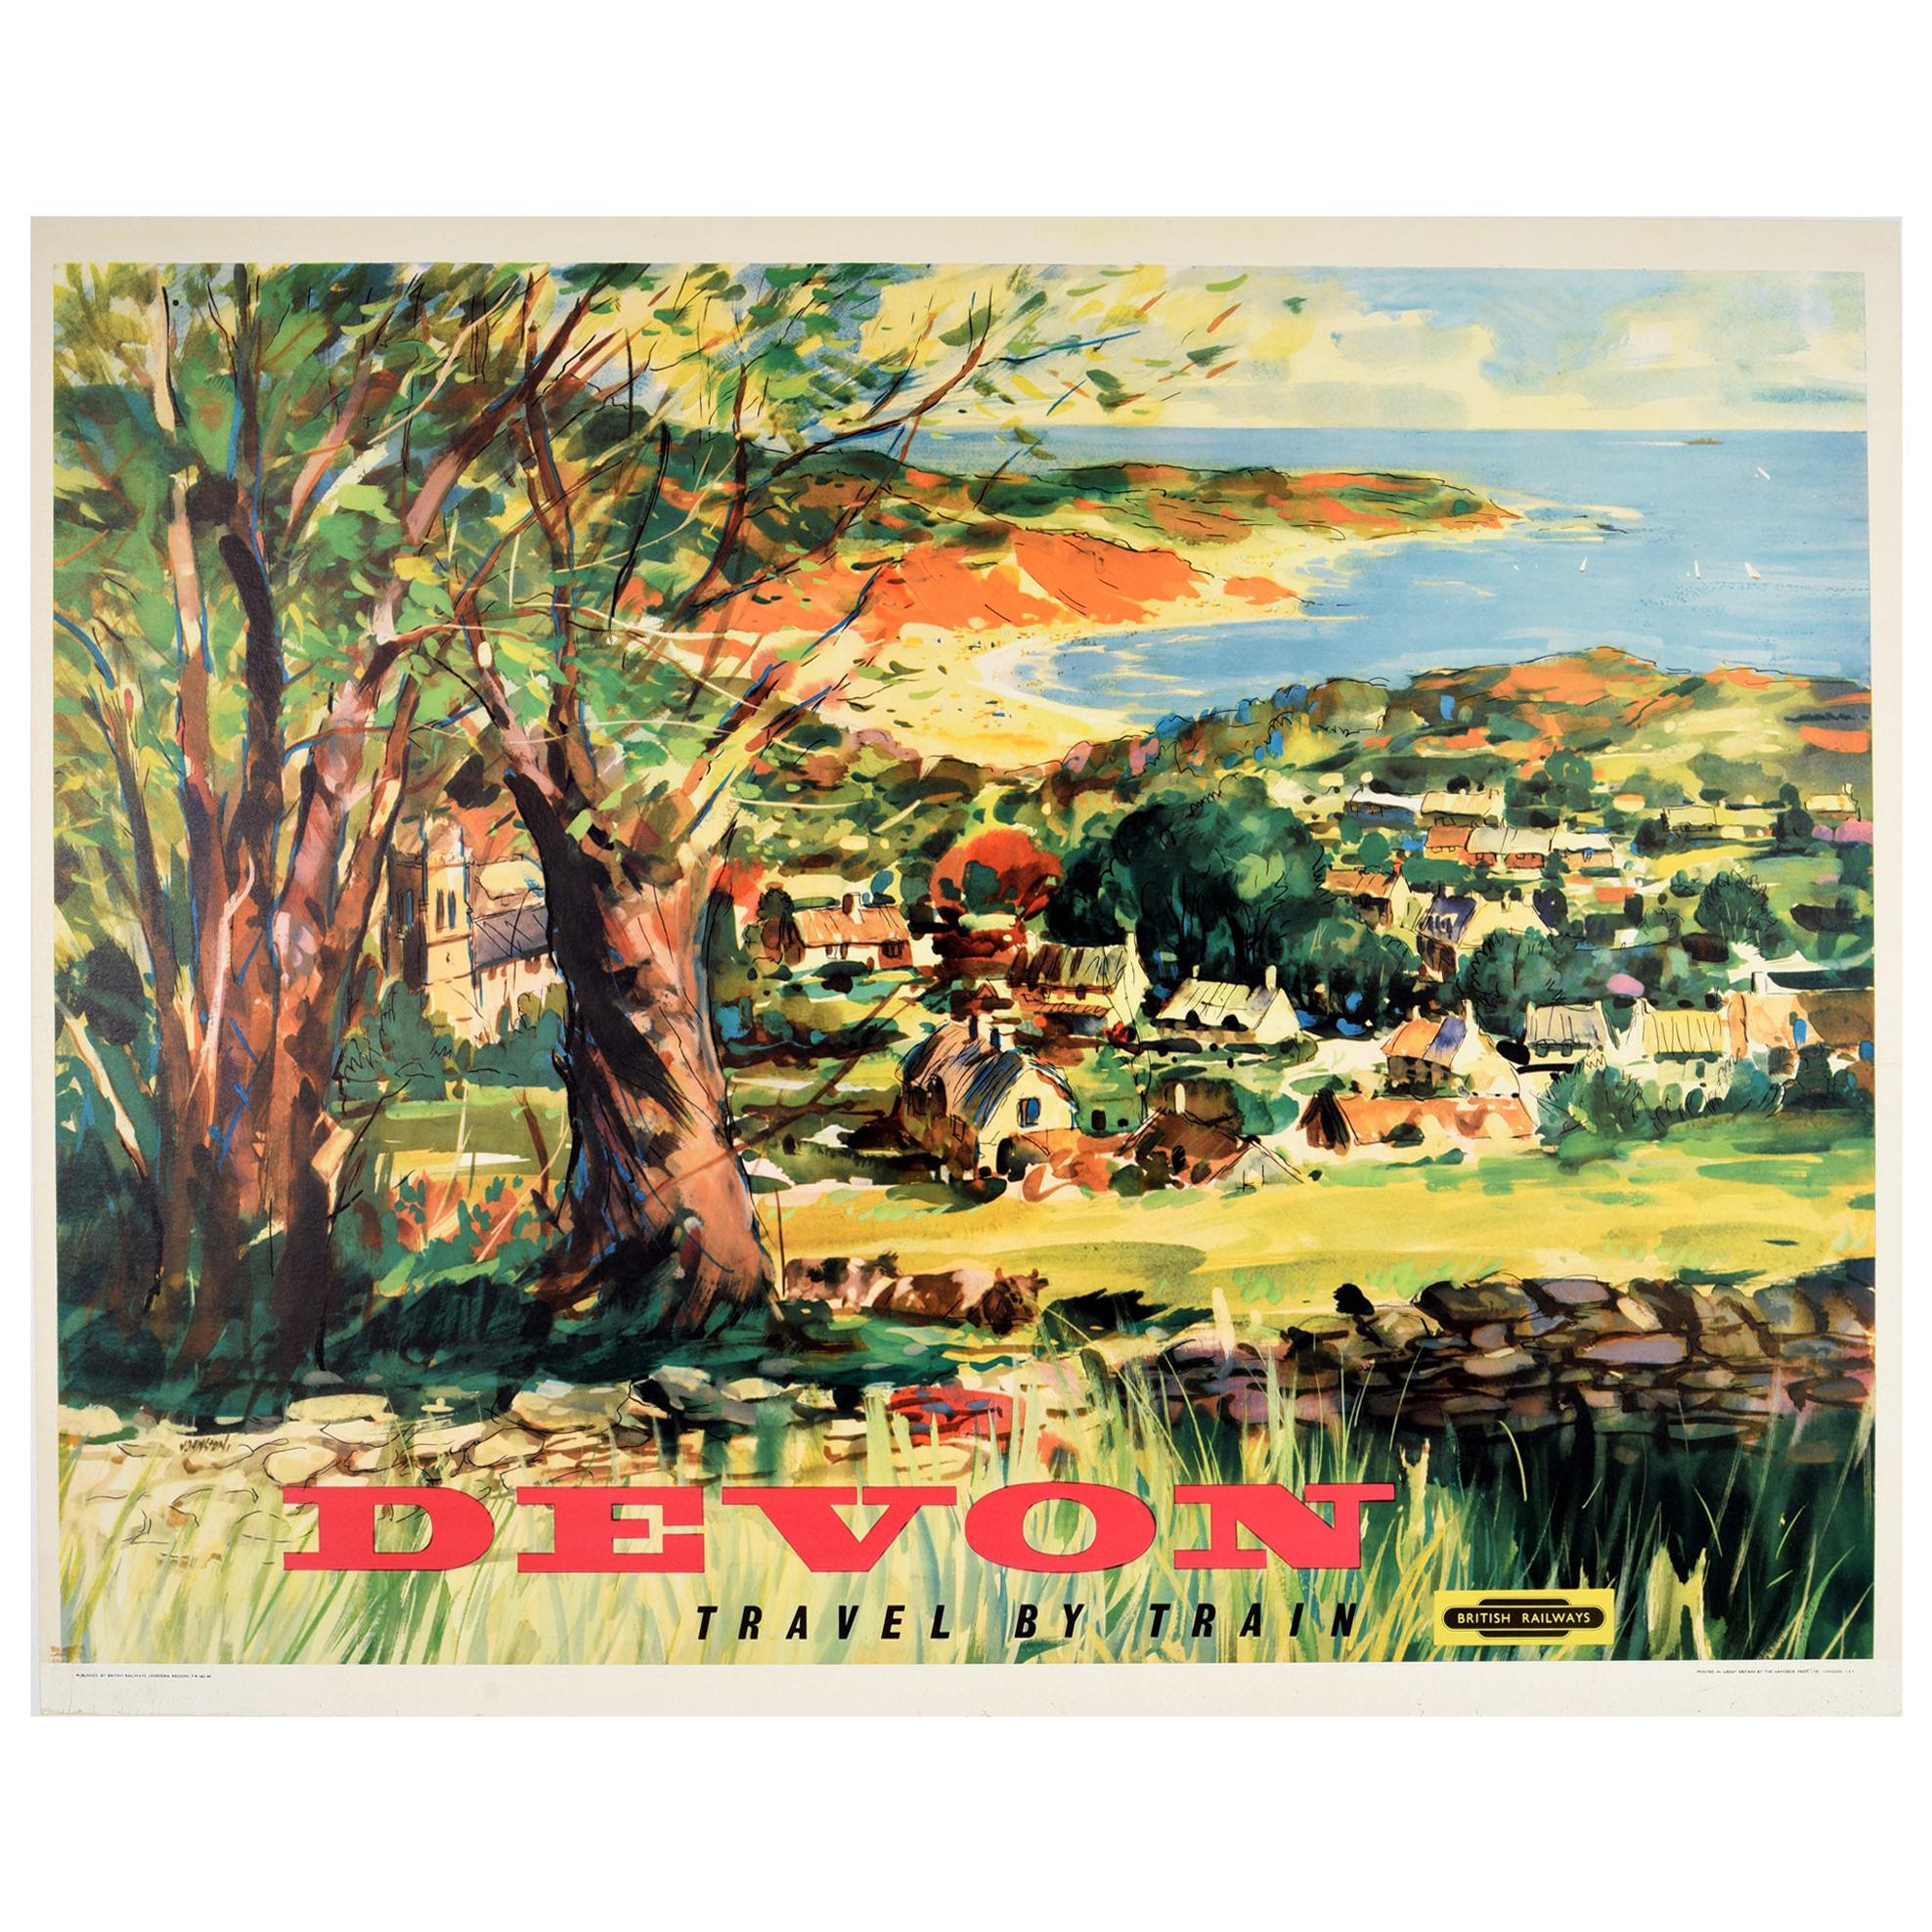 Original Vintage Poster Devon Travel By Train British Railways Countryside Beach